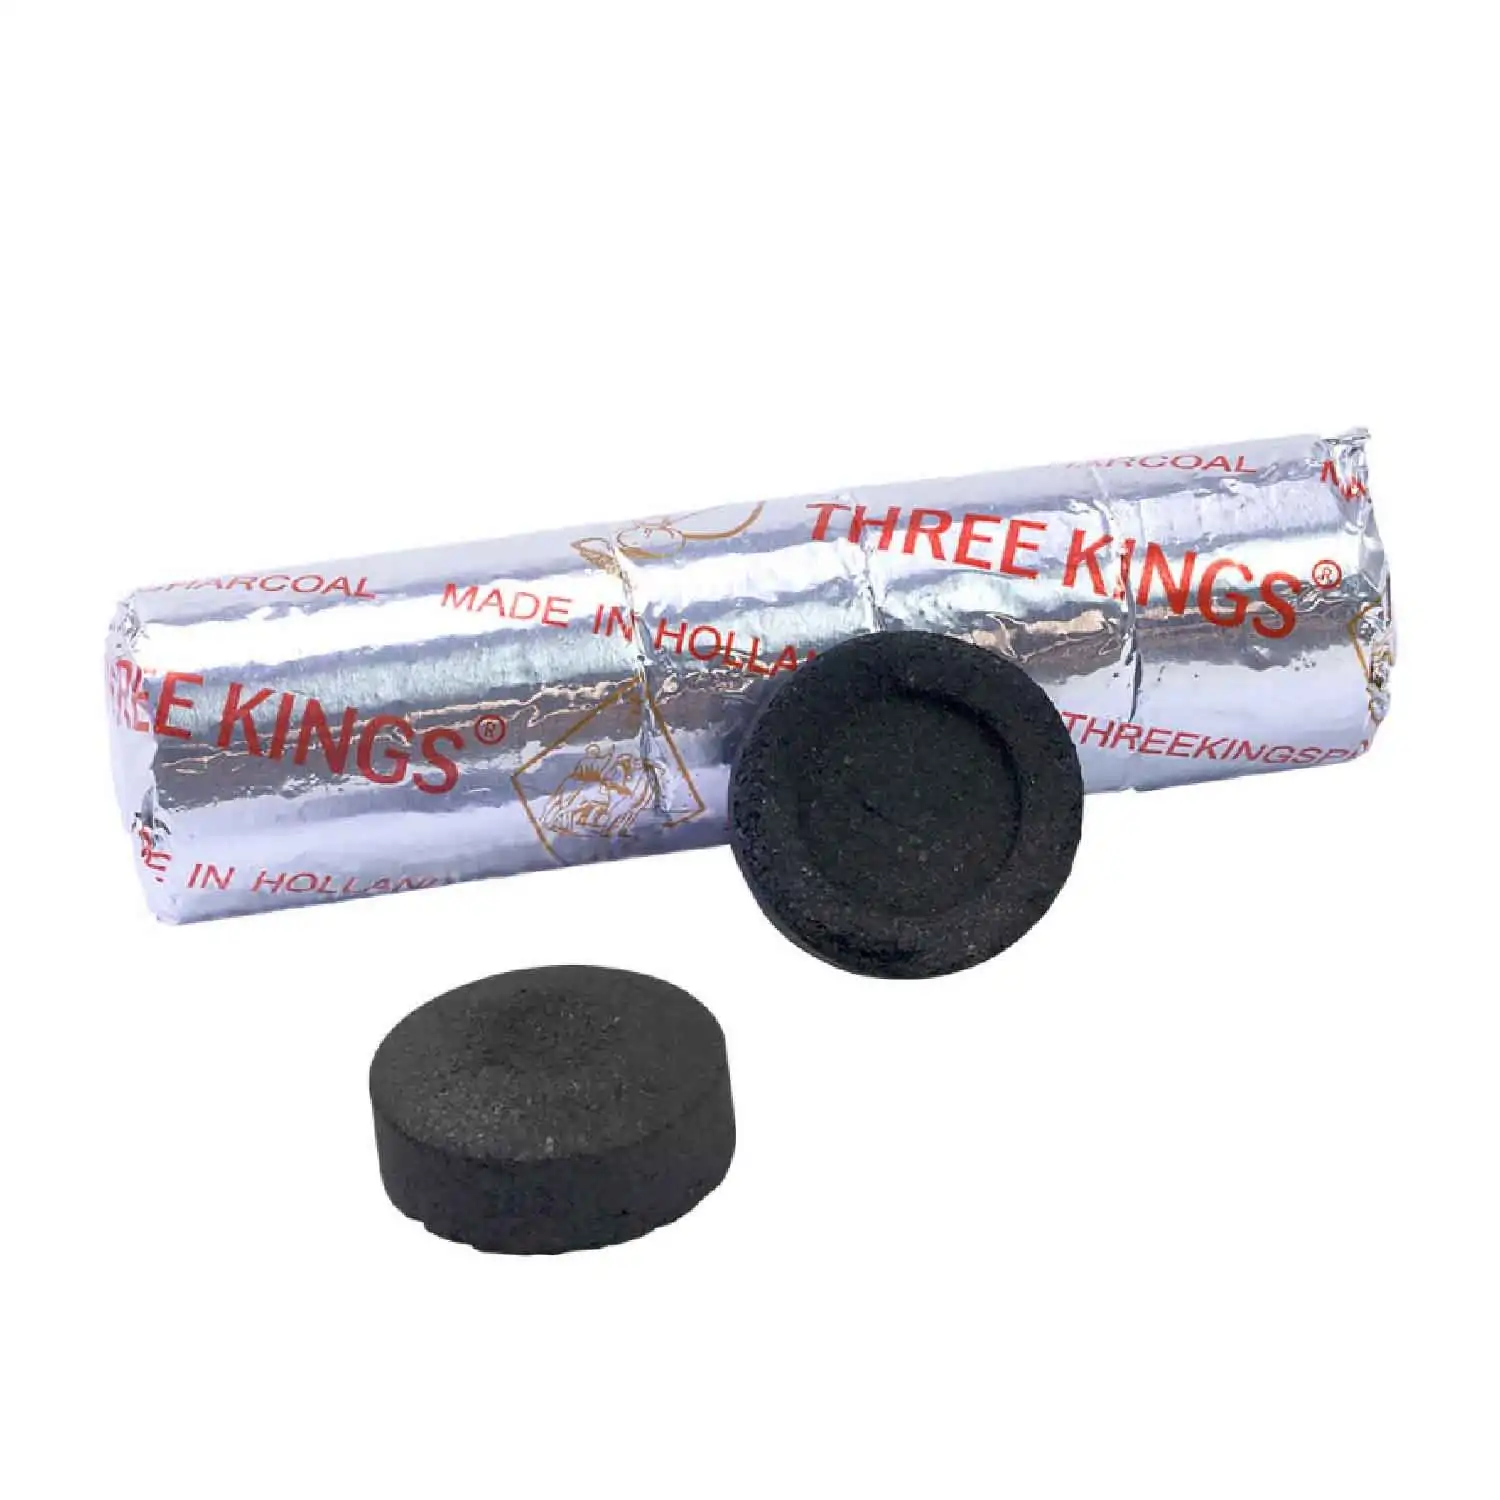 Three Kings charbon 10pcs - Buy at Real Tobacco